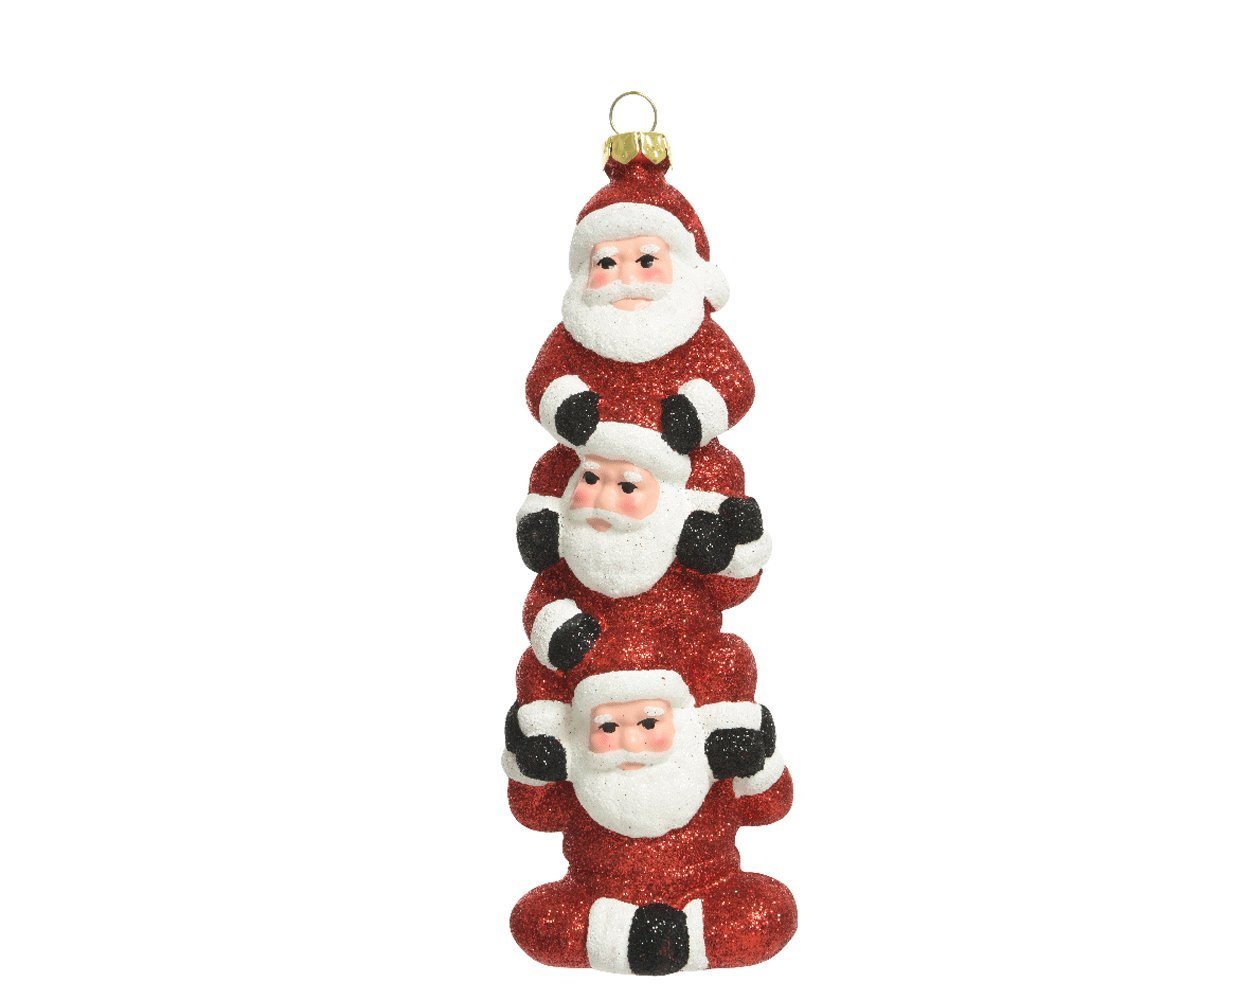 Decoris season decorations Christbaumschmuck, Christbaumschmuck Kunststoff Weihnachtsmann Trio 15cm rot von Decoris season decorations